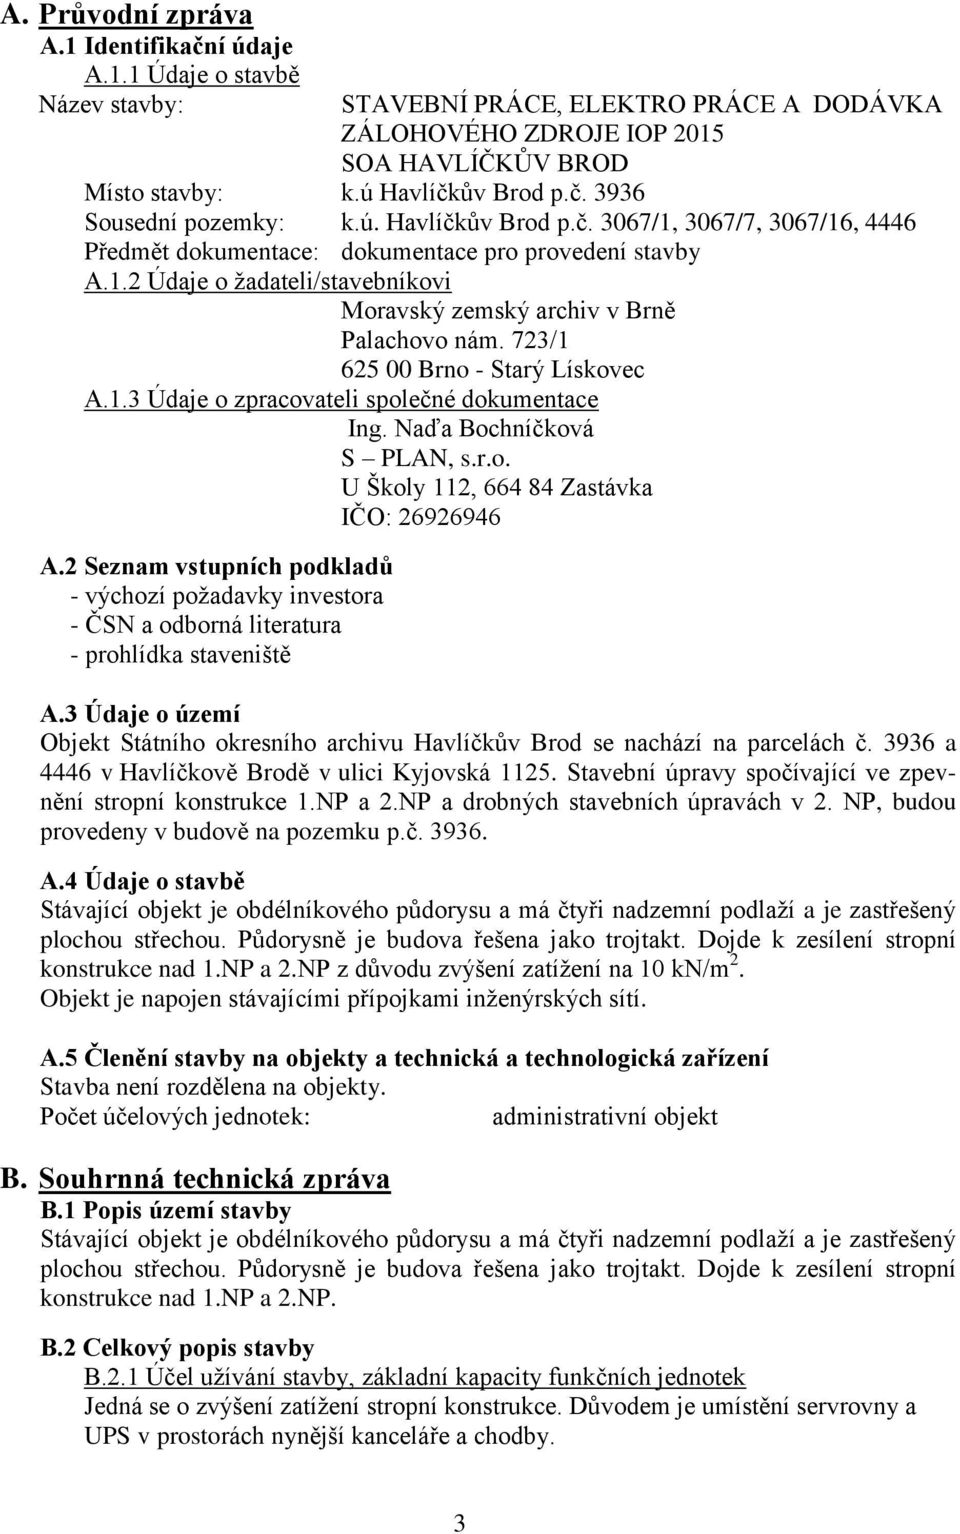 723/1 625 00 Brno - Starý Lískovec A.1.3 Údaje o zpracovateli společné dokumentace Ing. Naďa Bochníčková S PLAN, s.r.o. U Školy 112, 664 84 Zastávka IČO: 26926946 A.